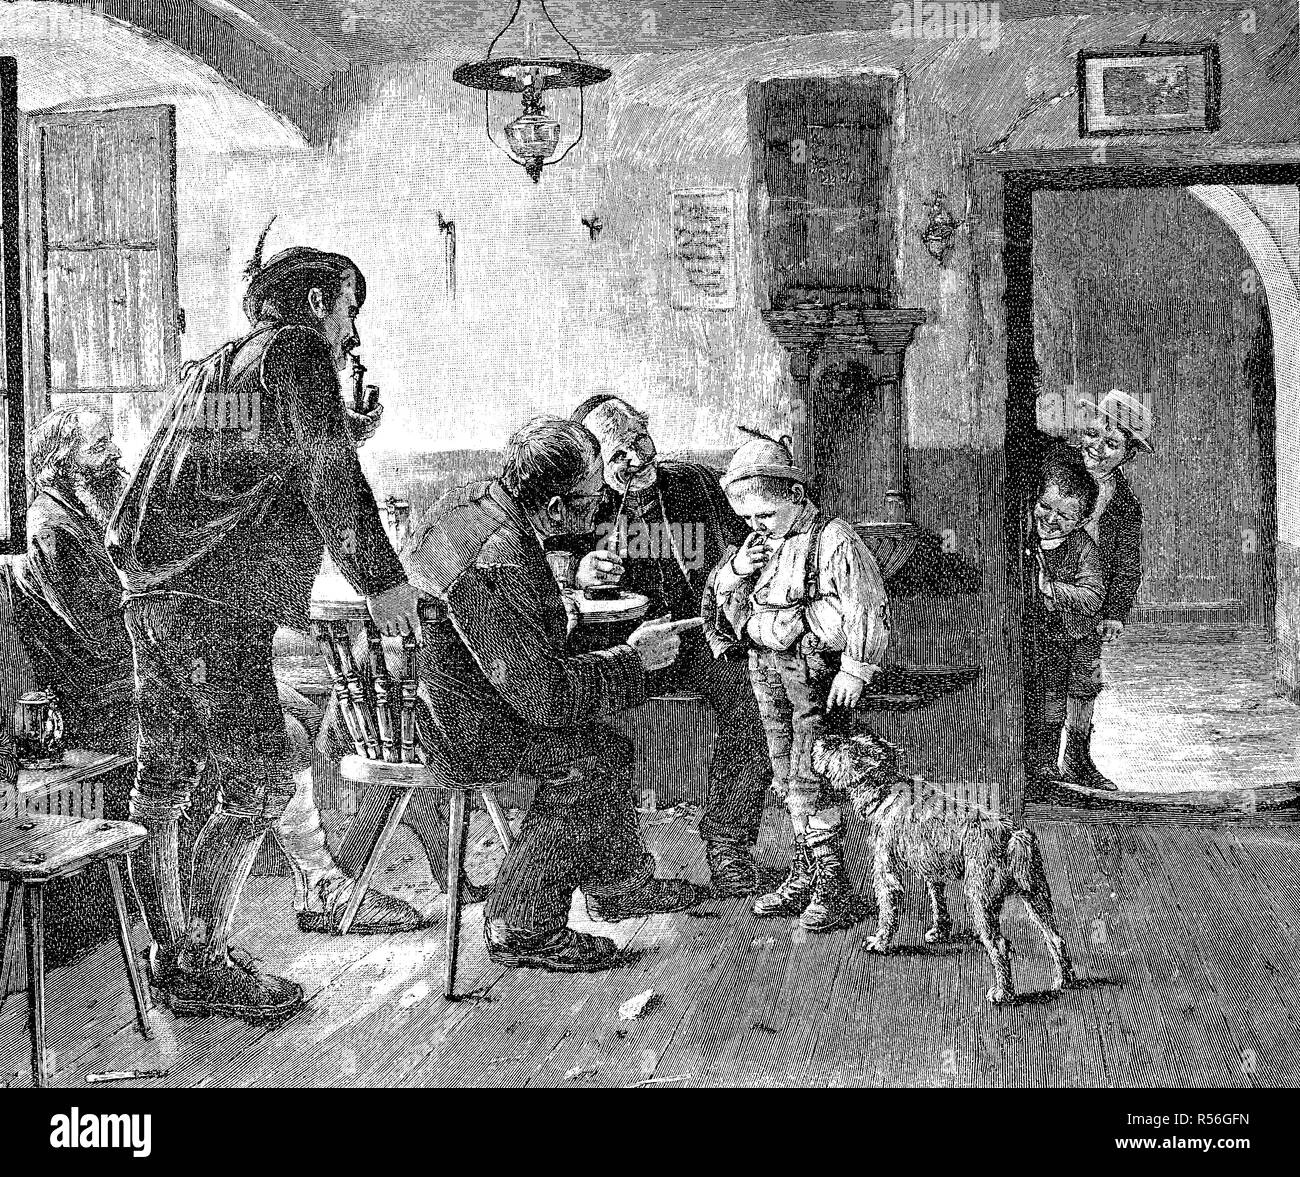 Little Boy Gets reproches en el Inn porque robó las manzanas 1880, xilografía, Alemania Foto de stock